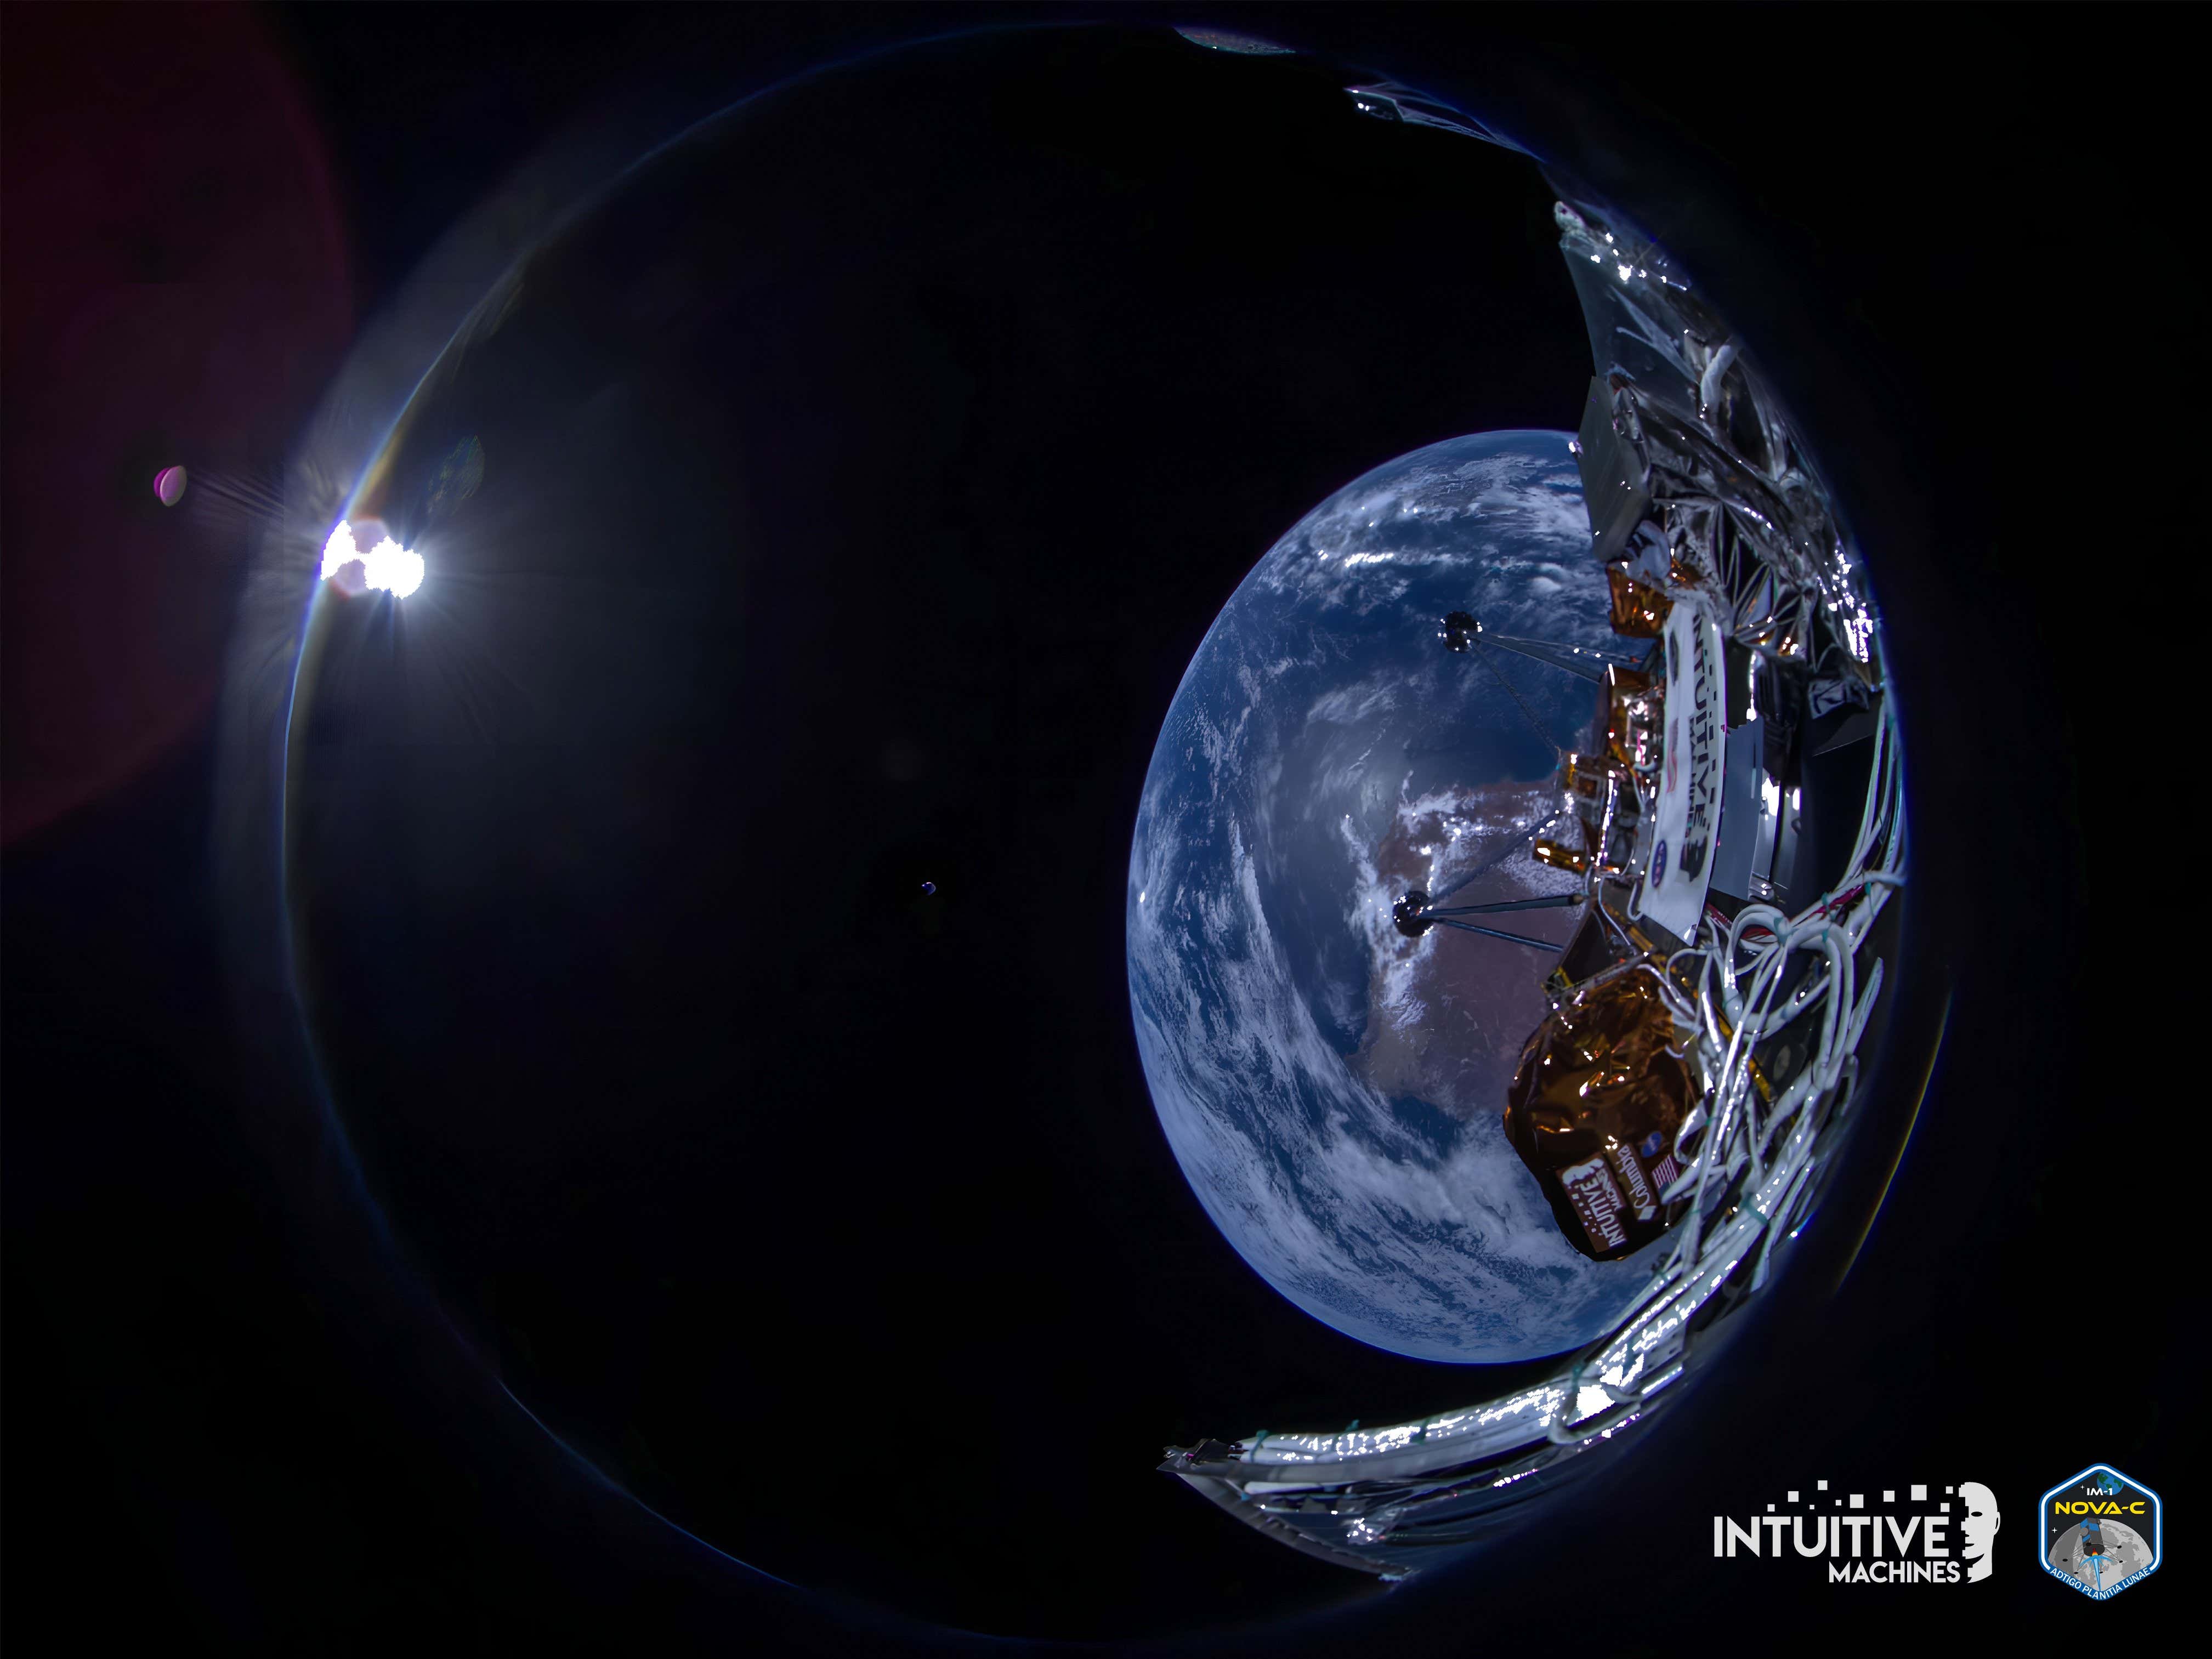 Odysseus Lander, Ay'a İniş Öncesinde Dünya'nın Muhteşem Fotoğraflarını Çekiyor başlıklı makale için resim